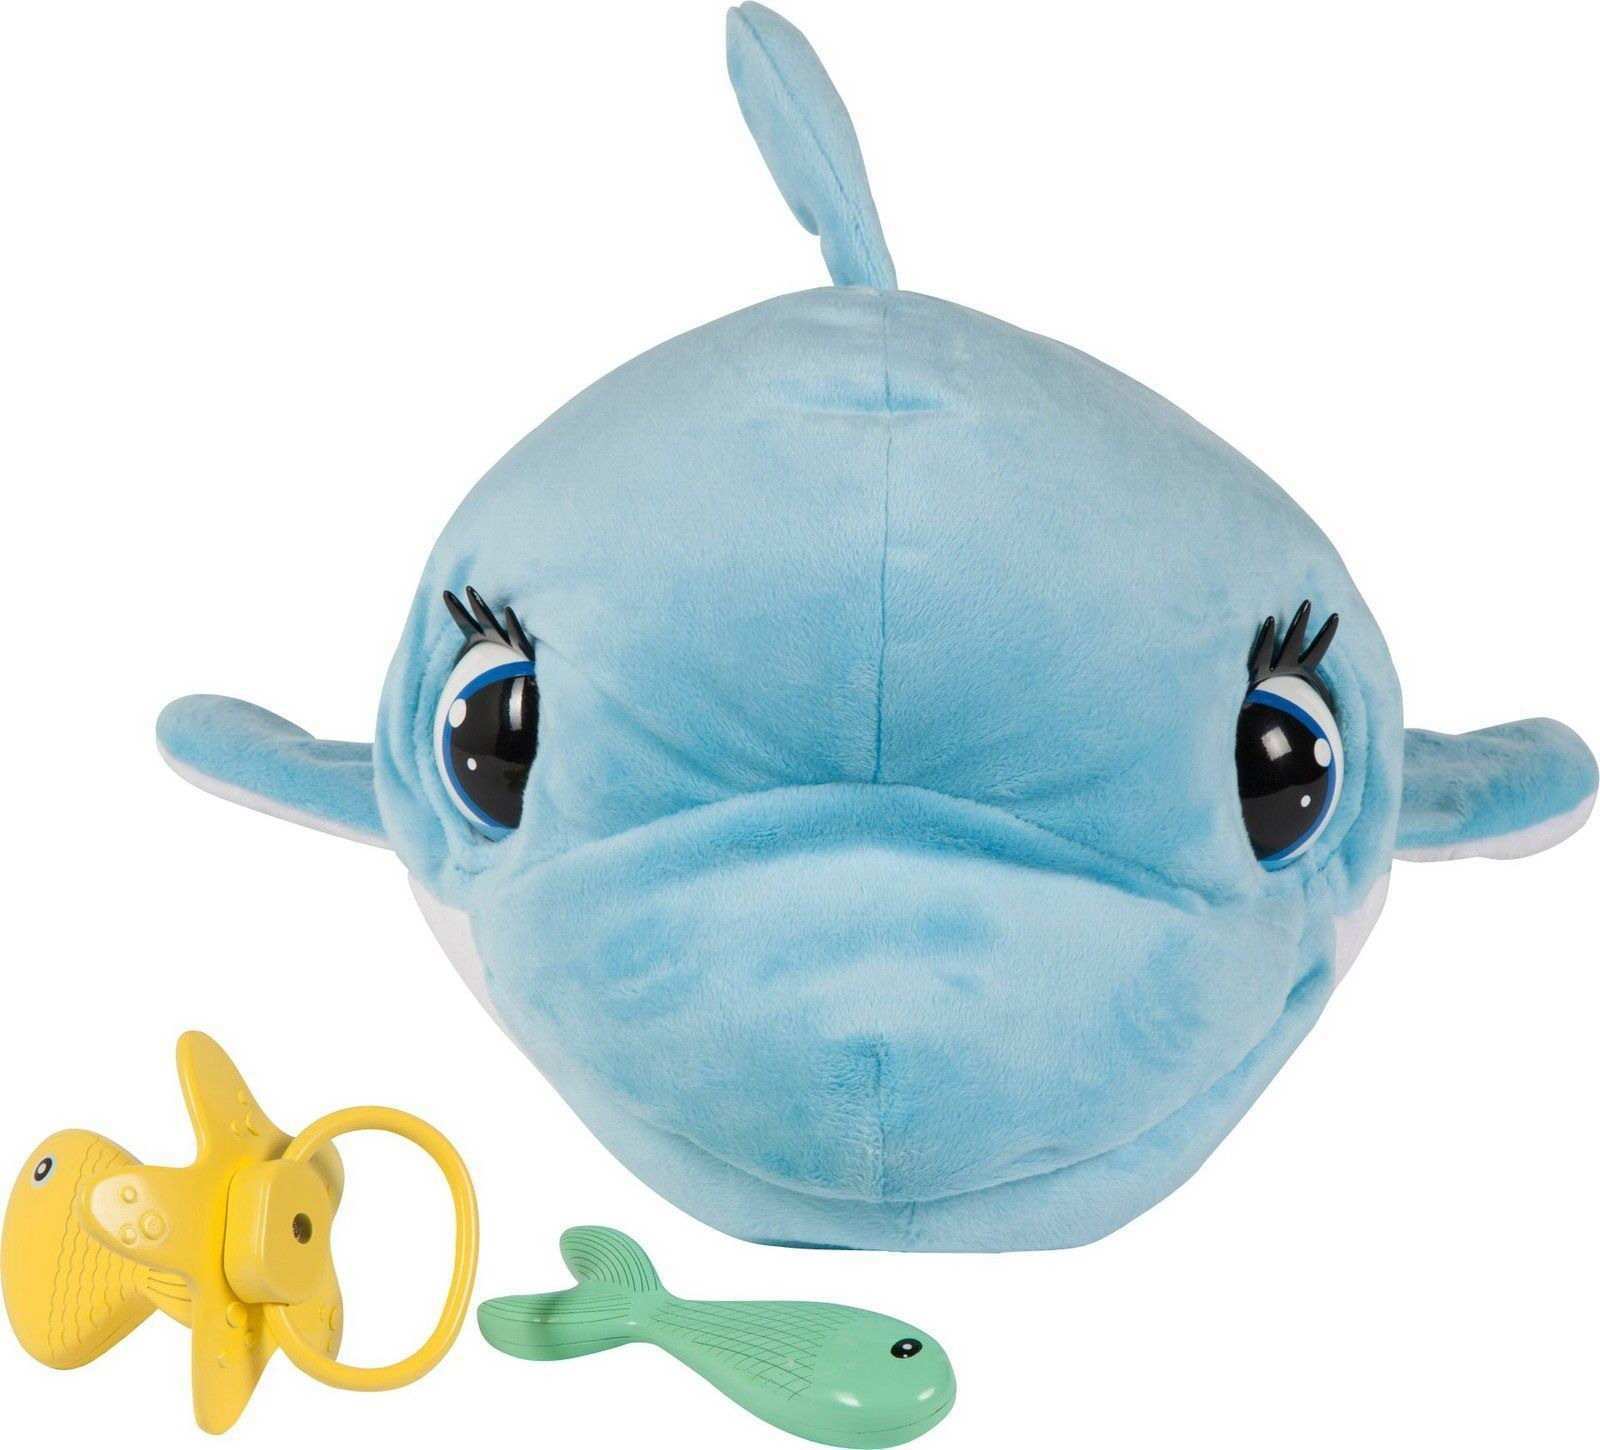 Игрушка интерактивная IMC Toys Club Petz Дельфин BluBlu интерактивный, со звуковыми эффектами, шевелит глазами и ртом, можно его кормить и уложить спа